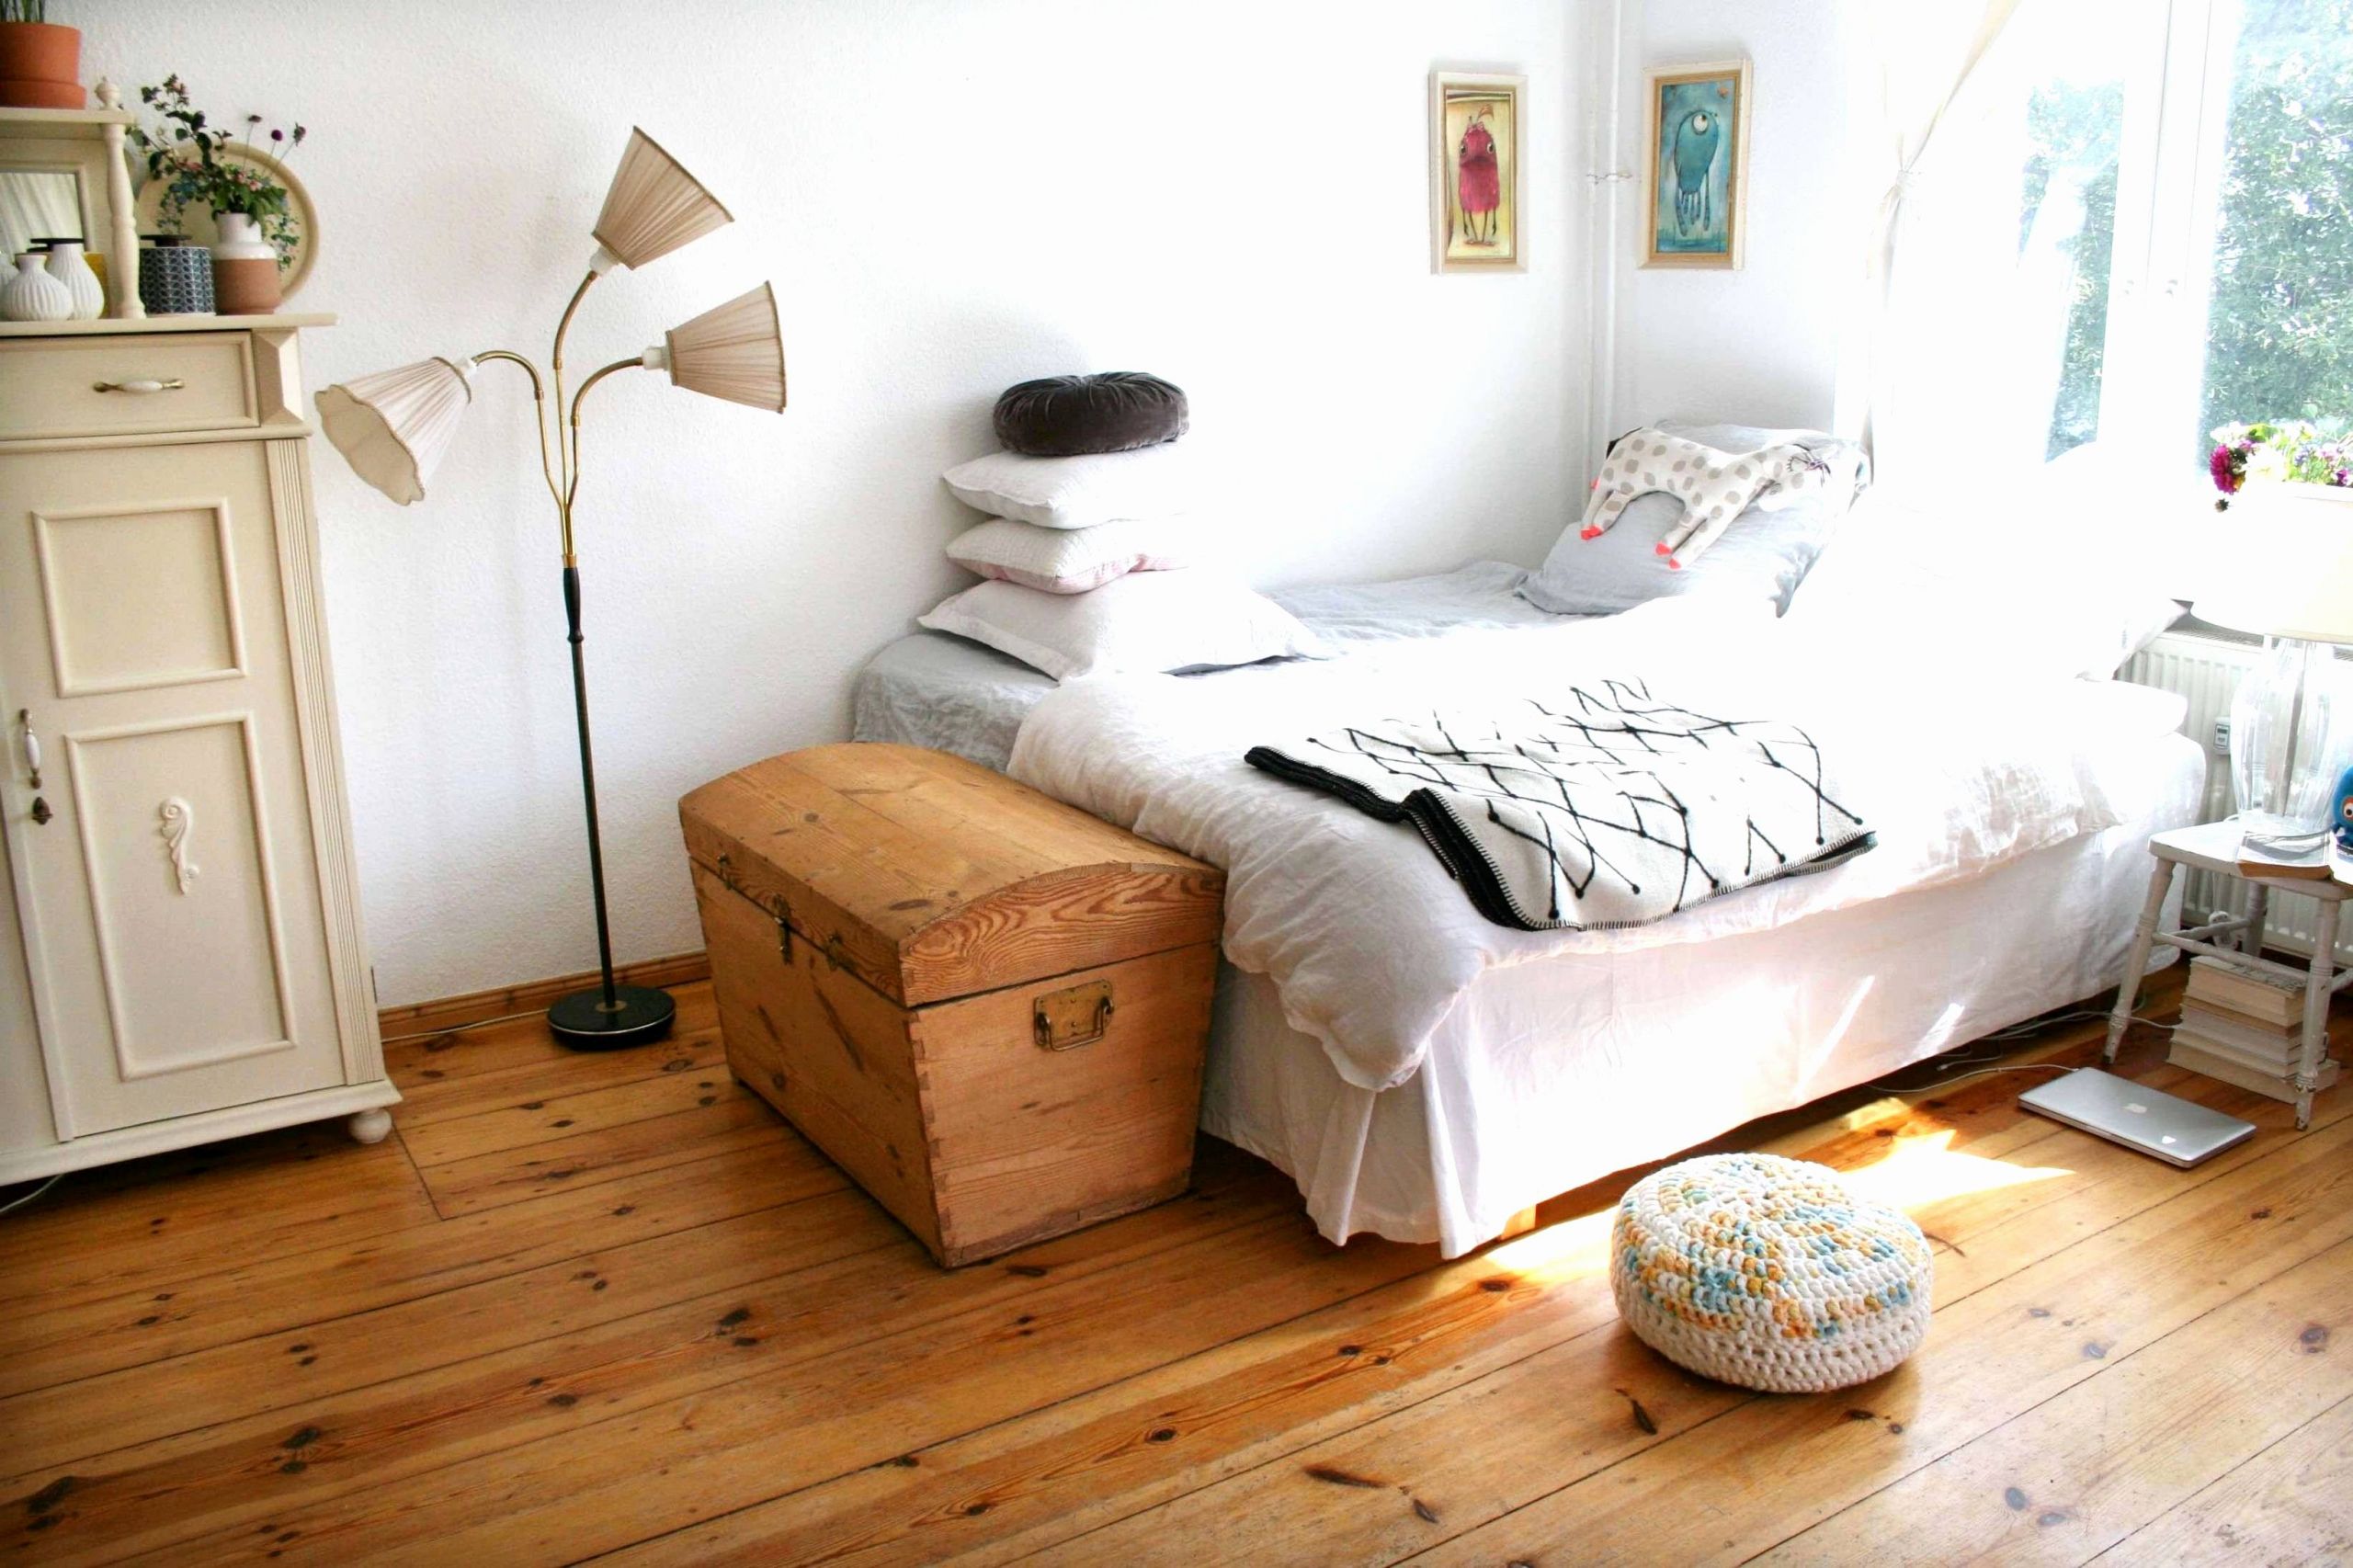 deko fur wohnzimmer ideen inspirierend 70 inspirierend stock von dekoideen fur schlafzimmer of deko fur wohnzimmer ideen